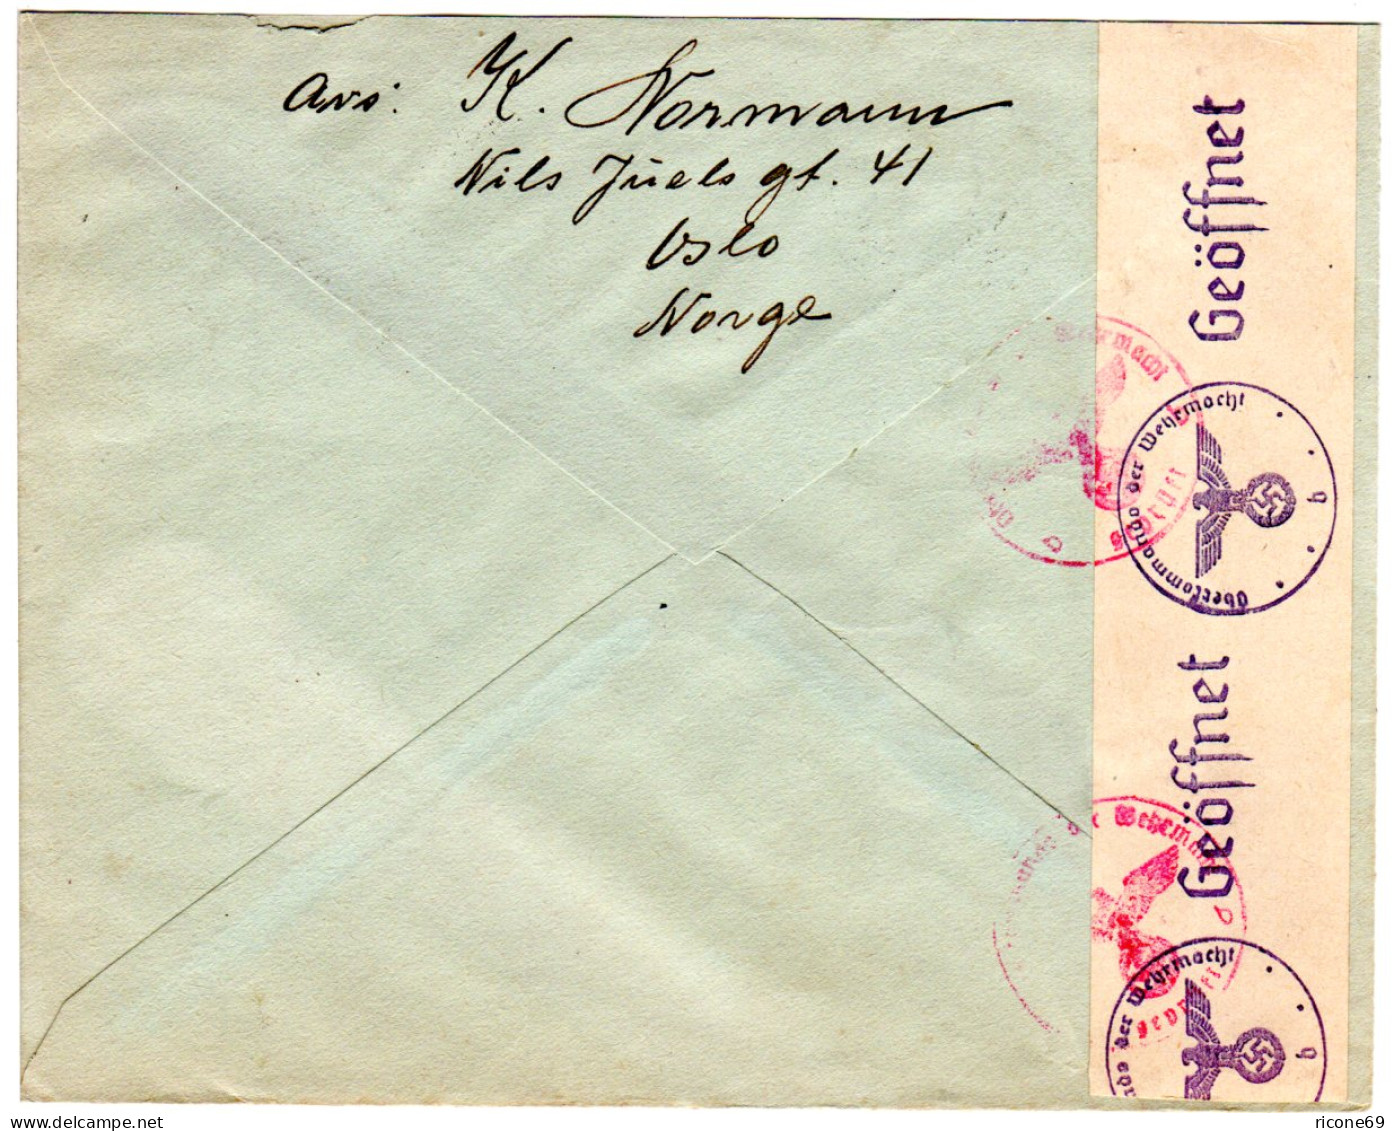 Norwegen 1943, 20 öre Grieg Auf Einschreiben Zensur Brief V. Oslo I.d. NL - Lettres & Documents